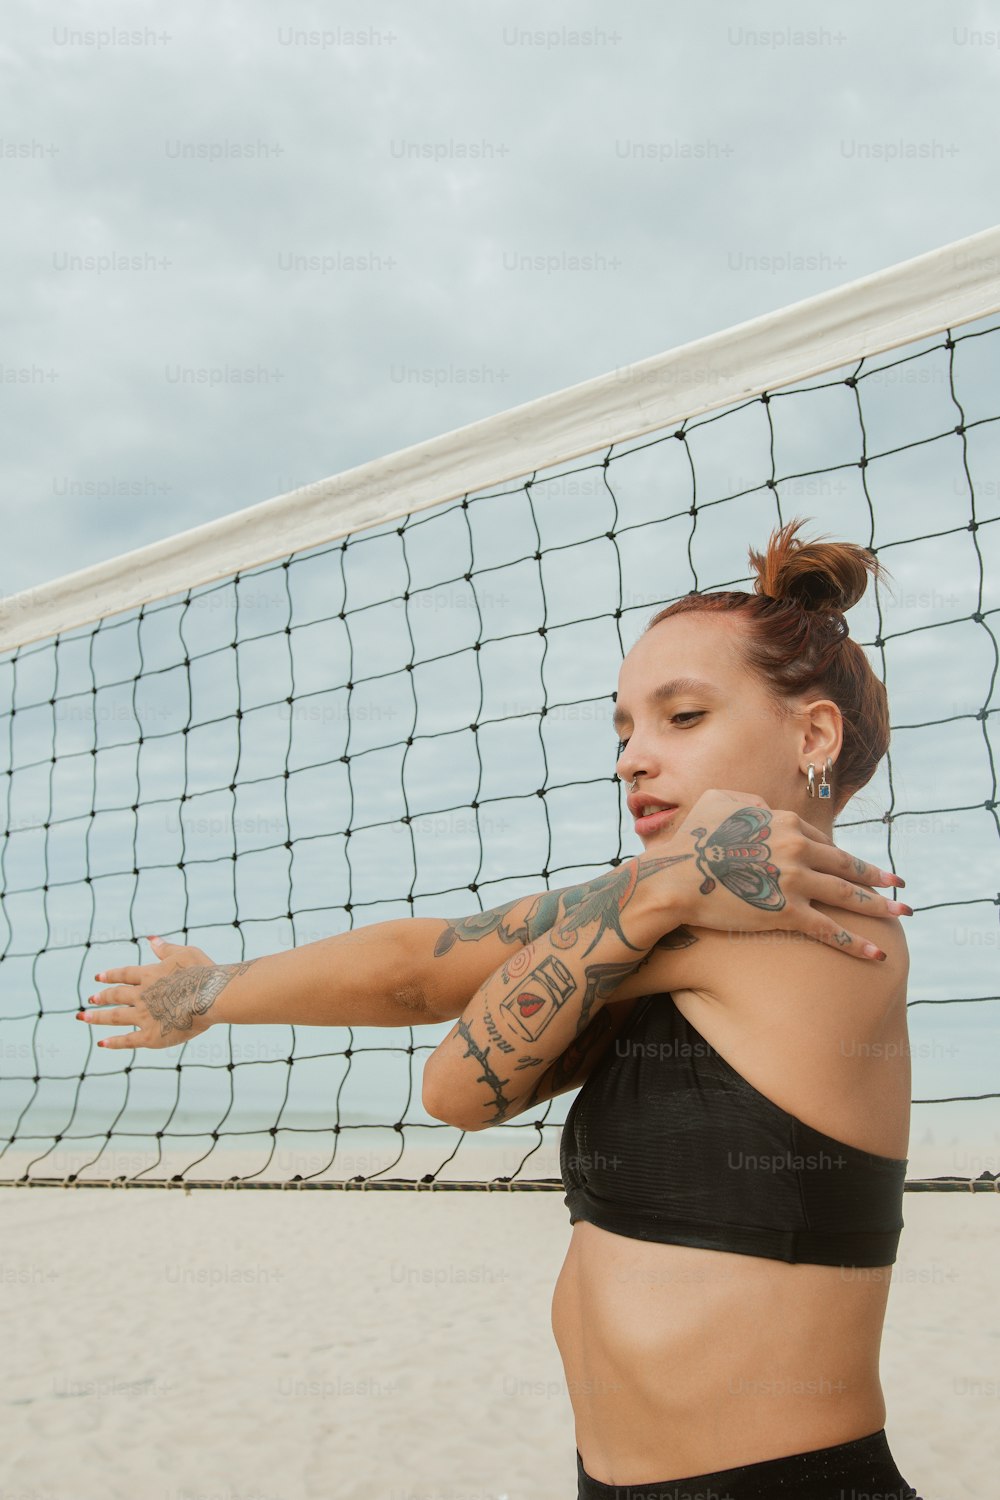 Una mujer con tatuajes en el brazo parada frente a una red de voleibol